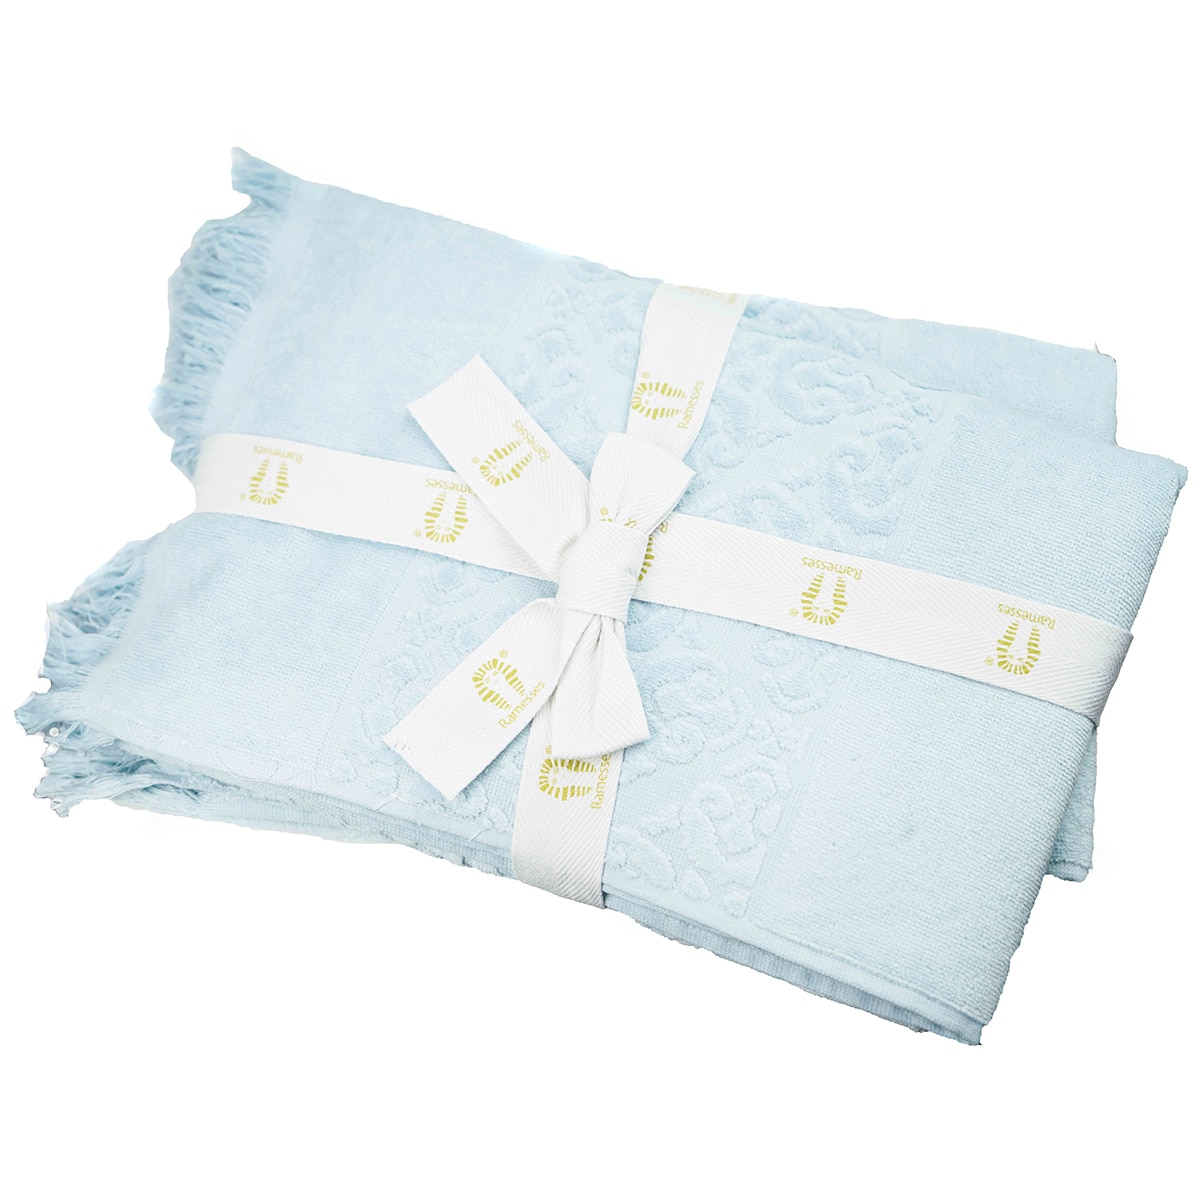 Kingtex Jacquard Velour 100% Cotton 500gsm Bath Towel 2 pack - Ice Blue